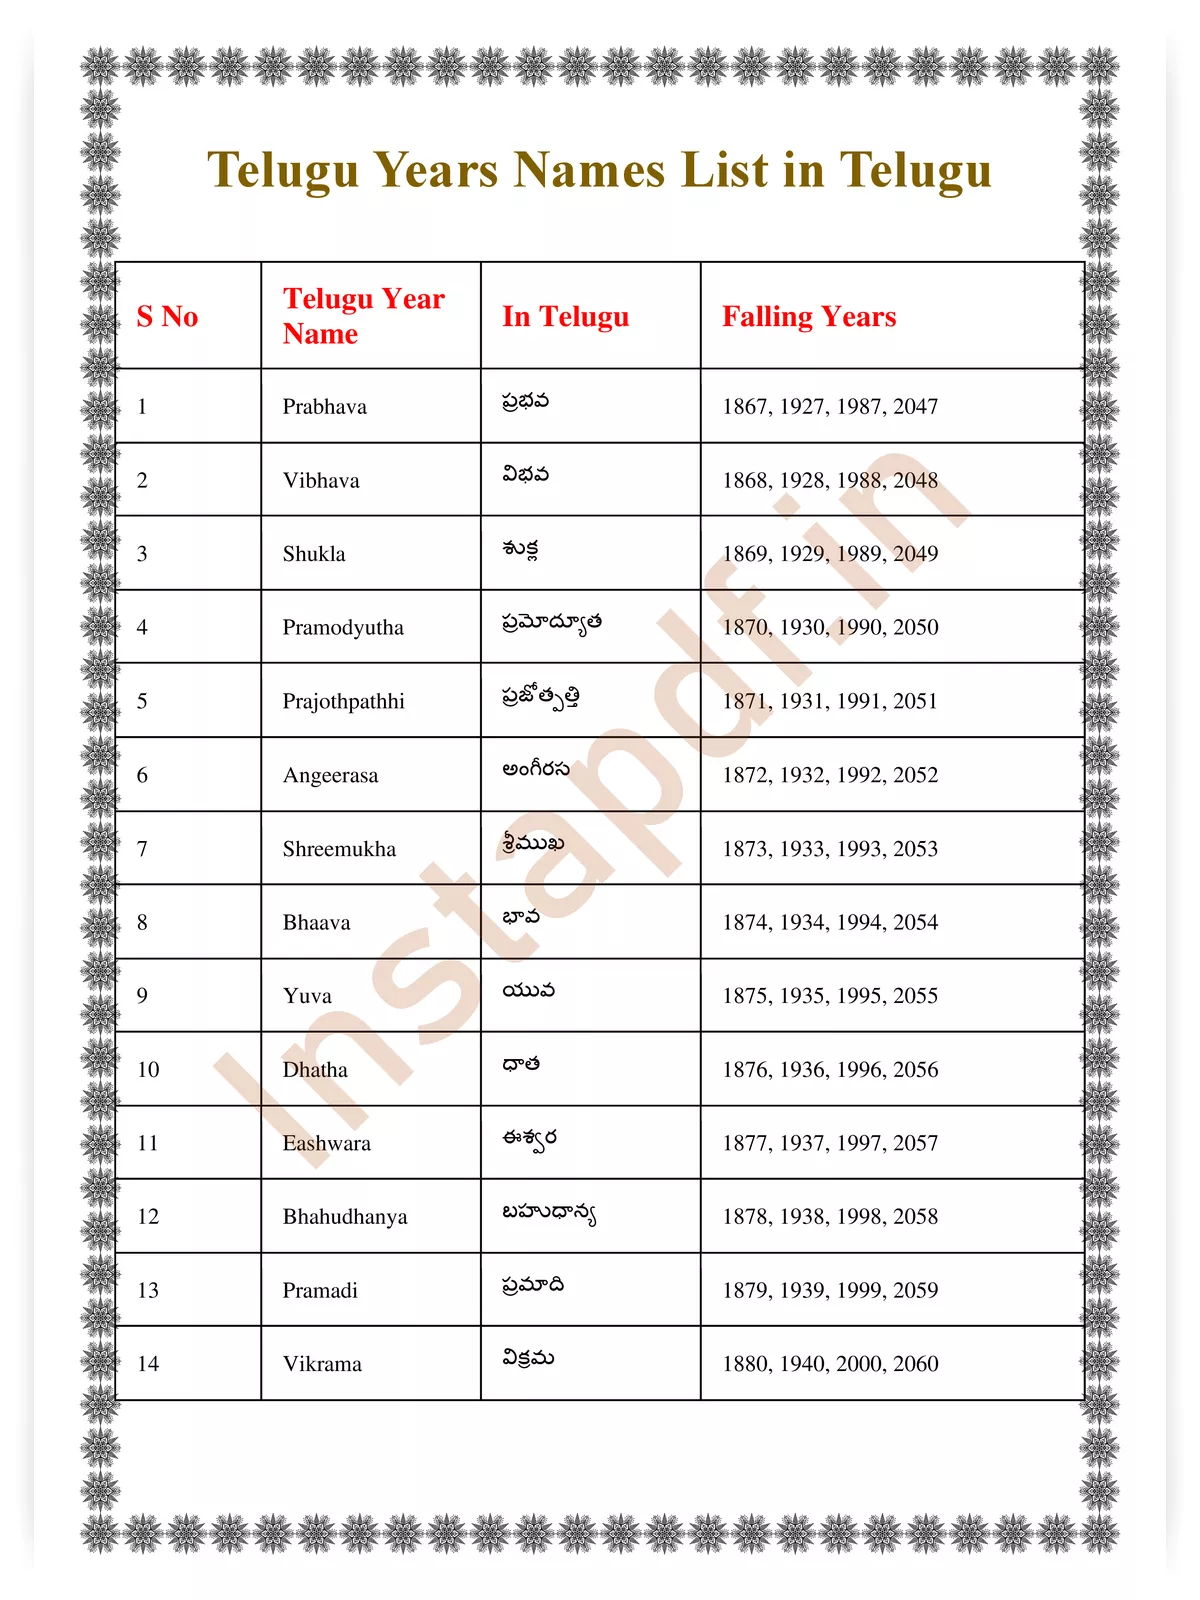 Telugu Years Names List in Telugu